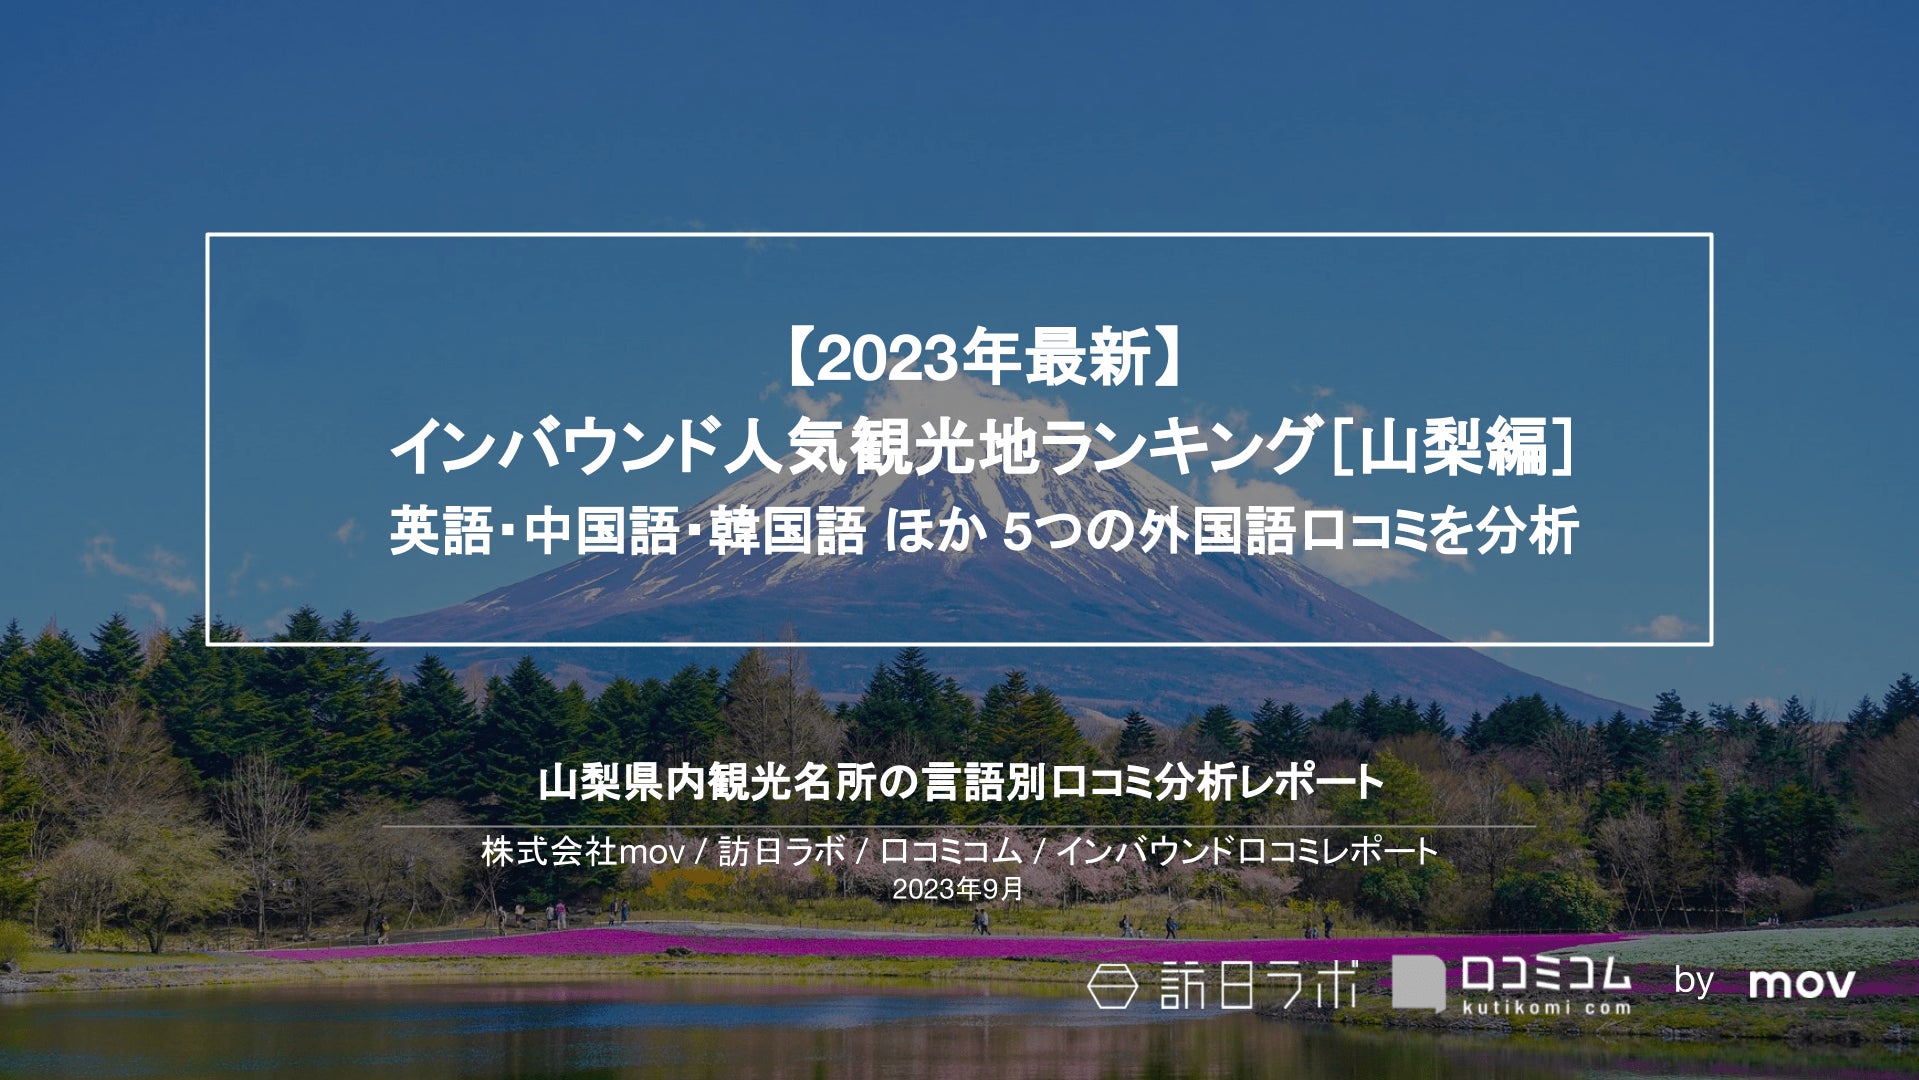 ドローンショー・ジャパンが、HONDA創立75周年記念イベント「23栃木祭り」をドローンショーで華やかに締めくくる